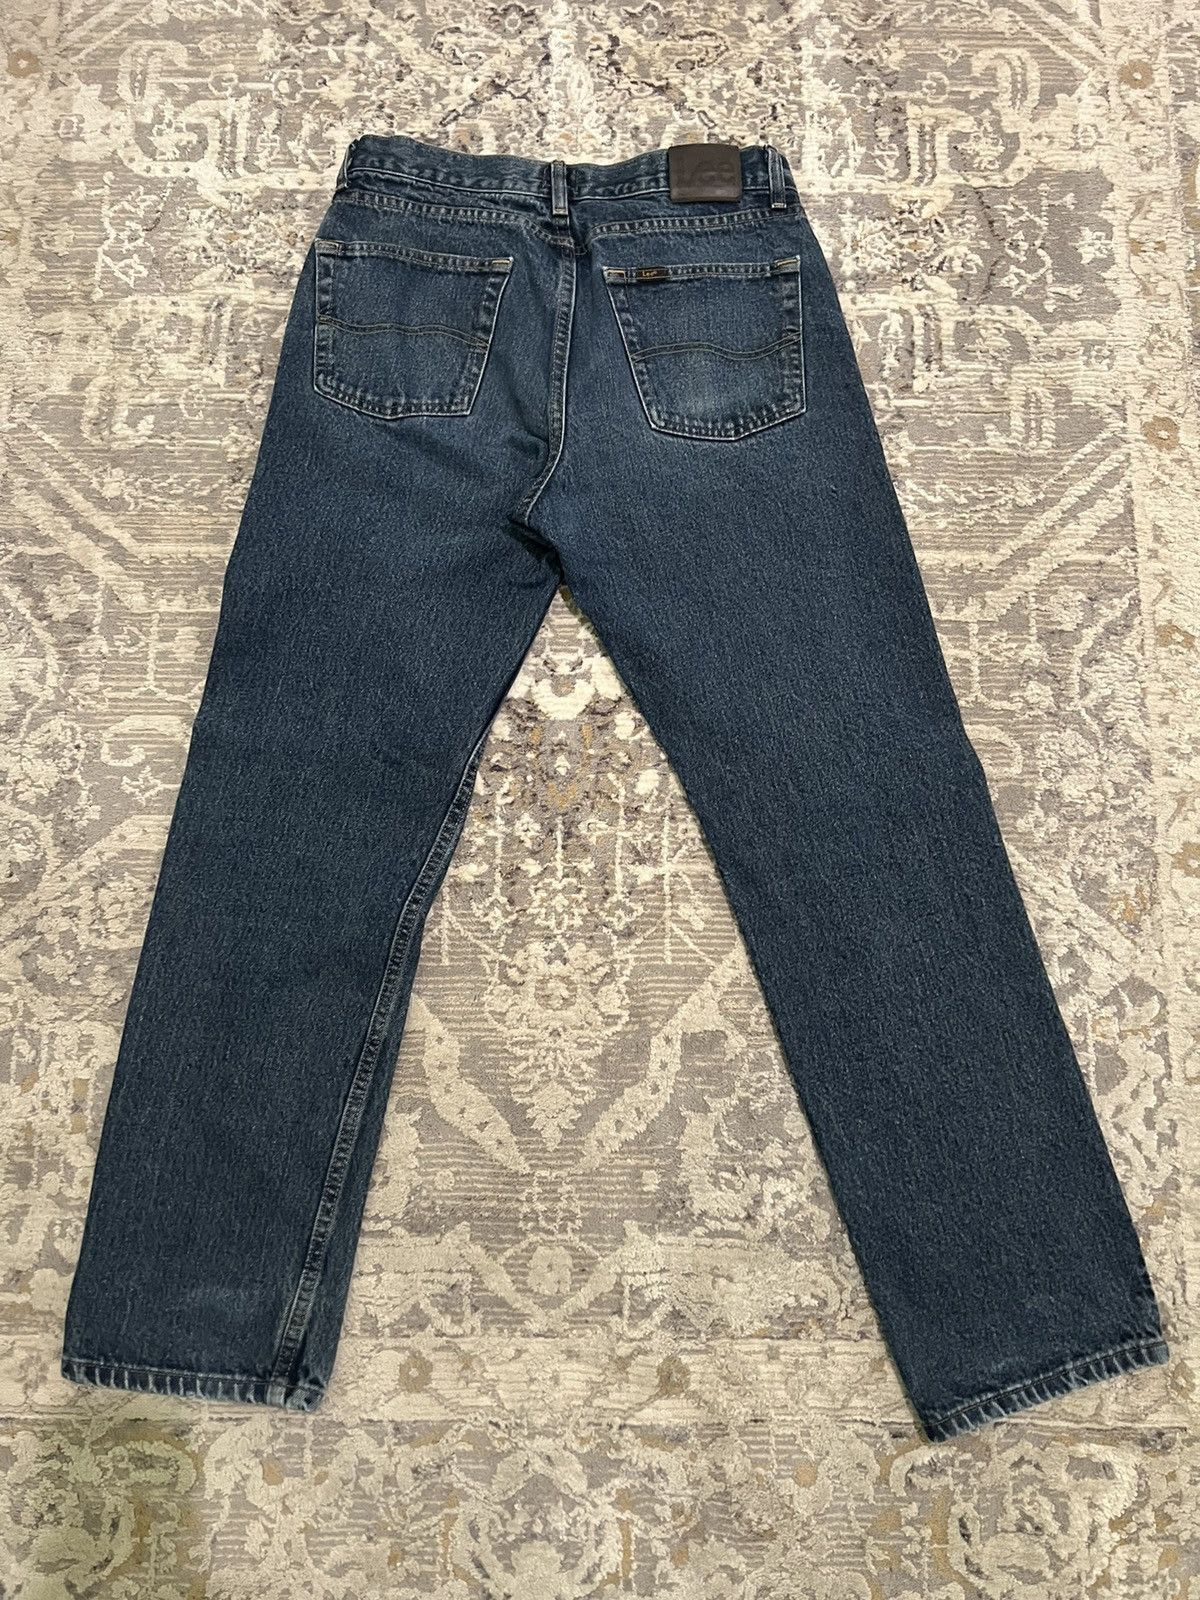 Lee Vintage lee pants | Grailed